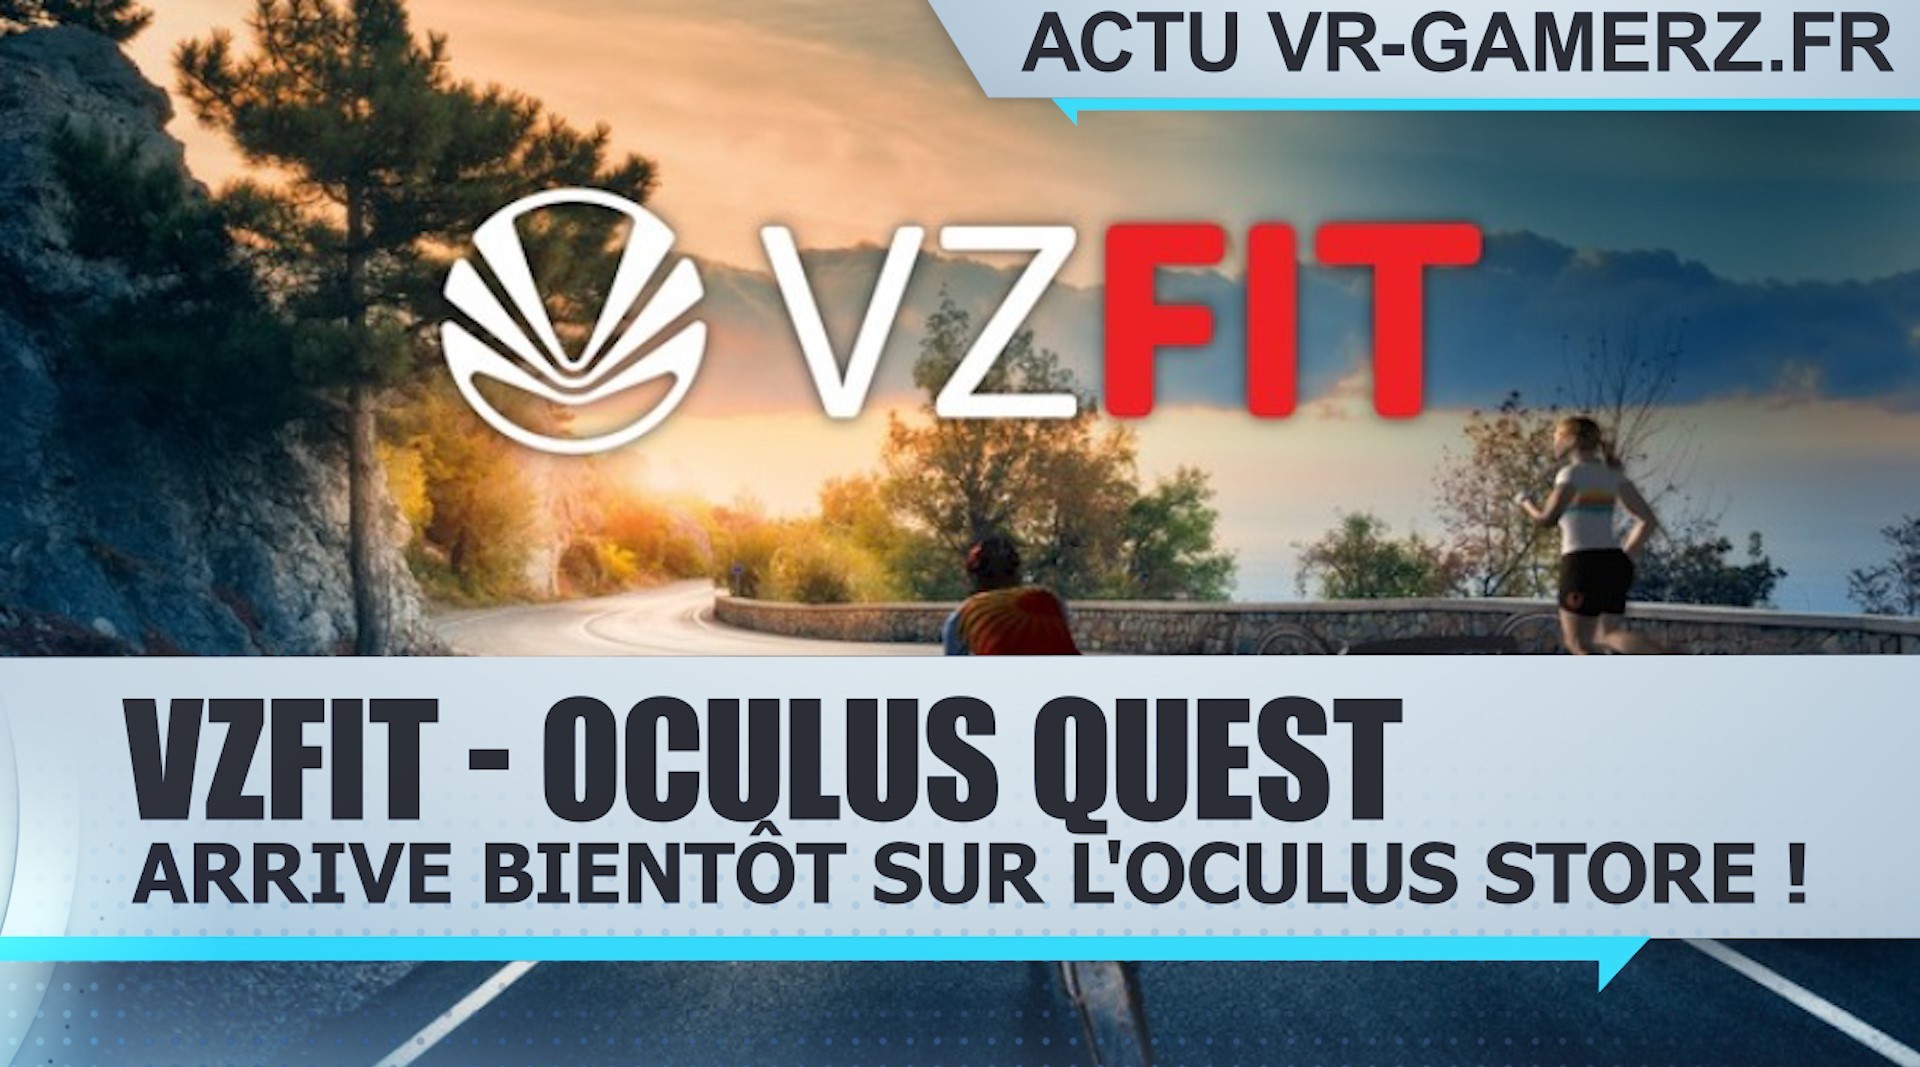 VZfit Oculus quest arrive bientôt sur l’Oculus store !